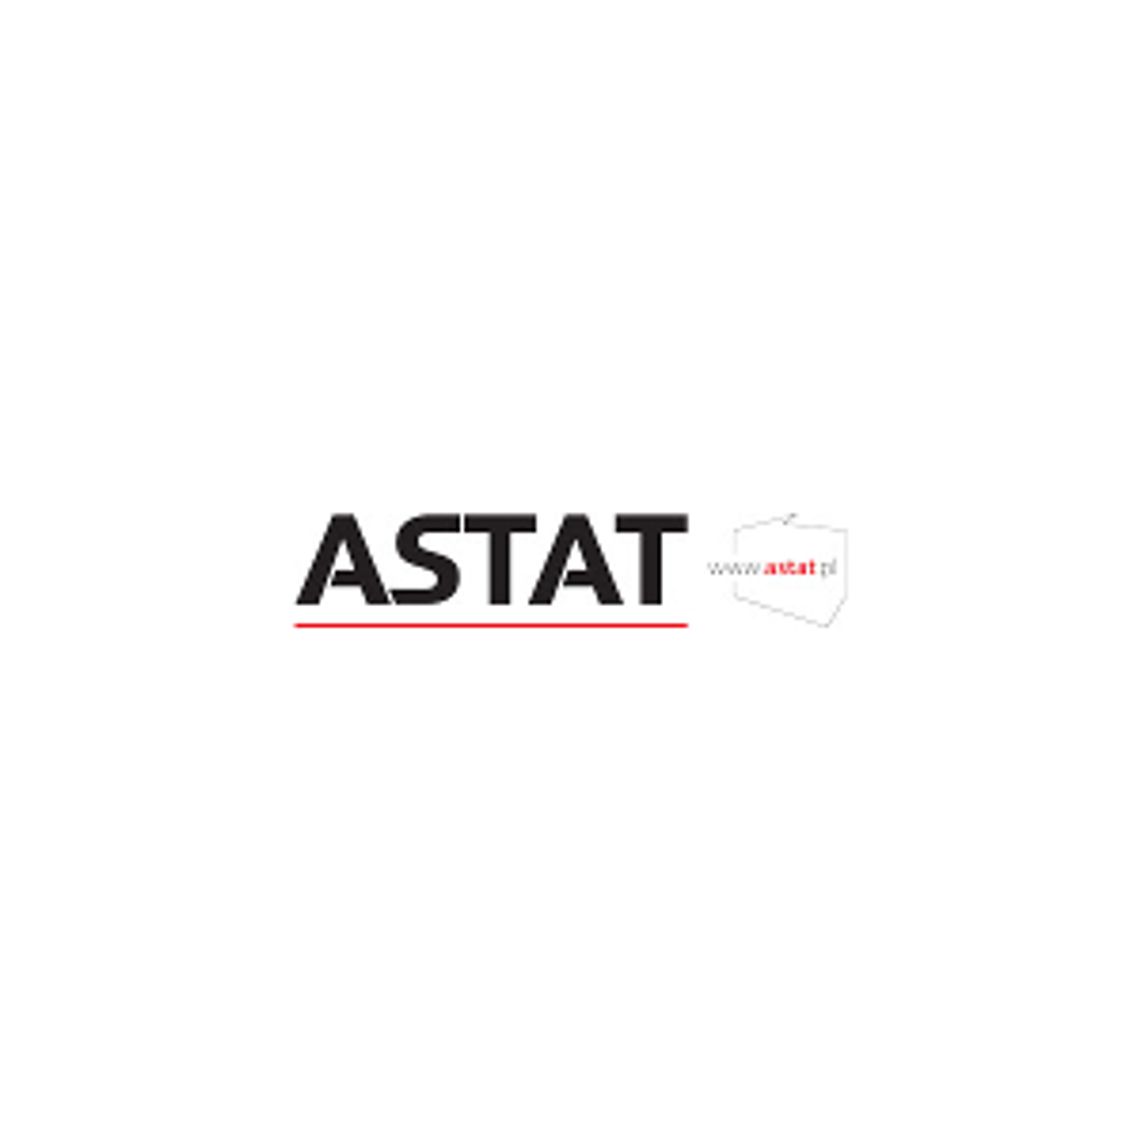 Dostawca Komponentów Automatyki Przemysłowej - Grupa ASTAT